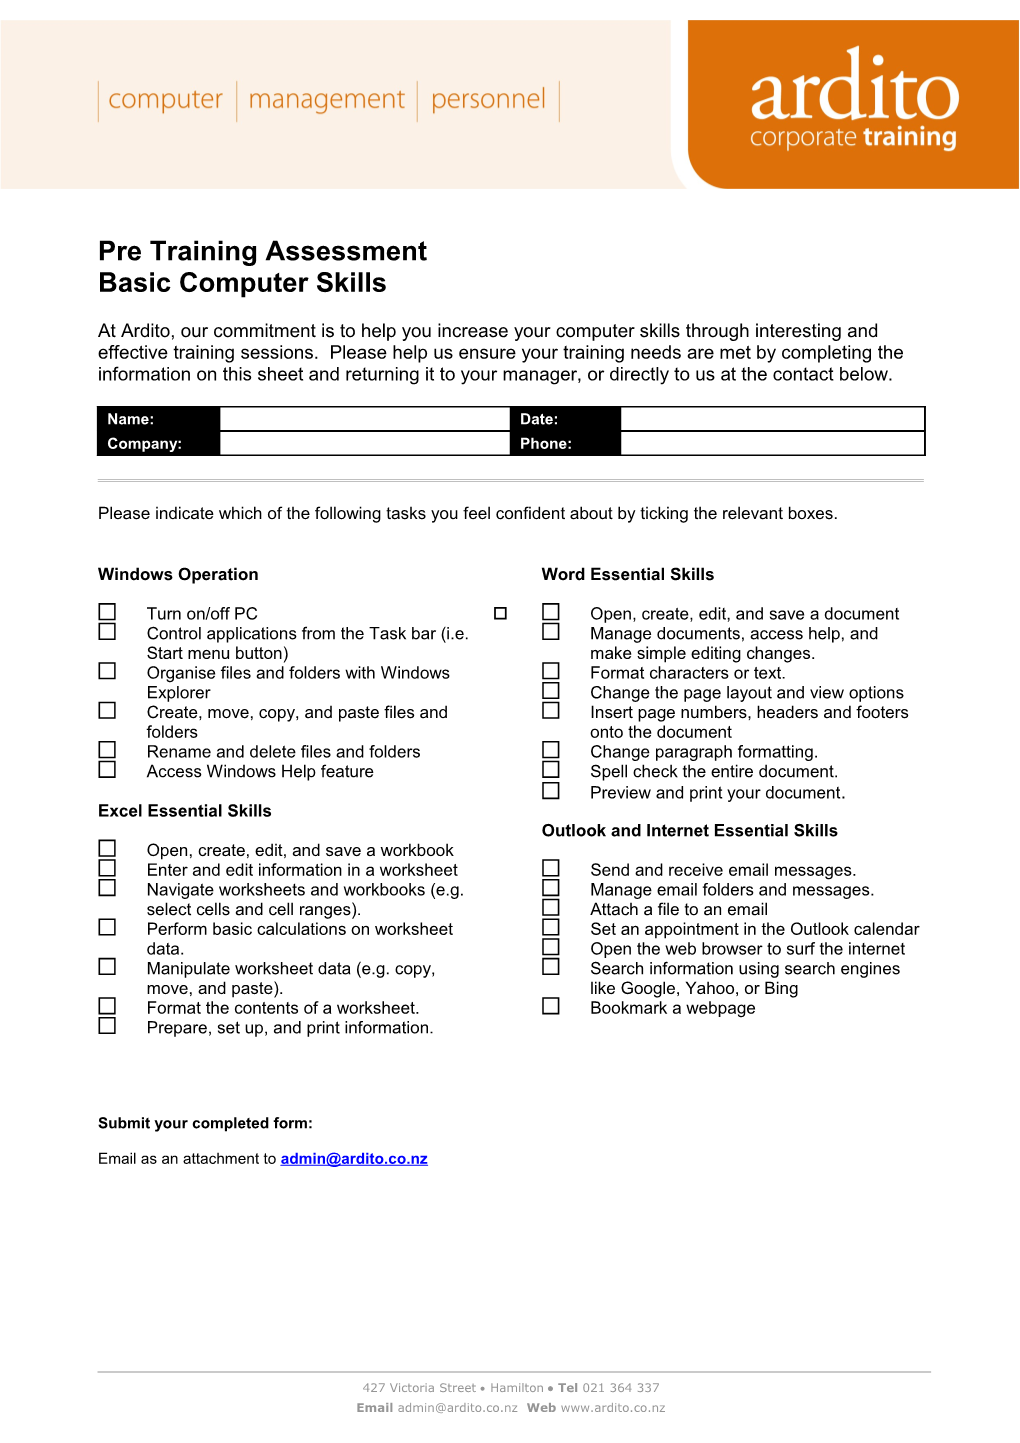 Pre Training Assessment